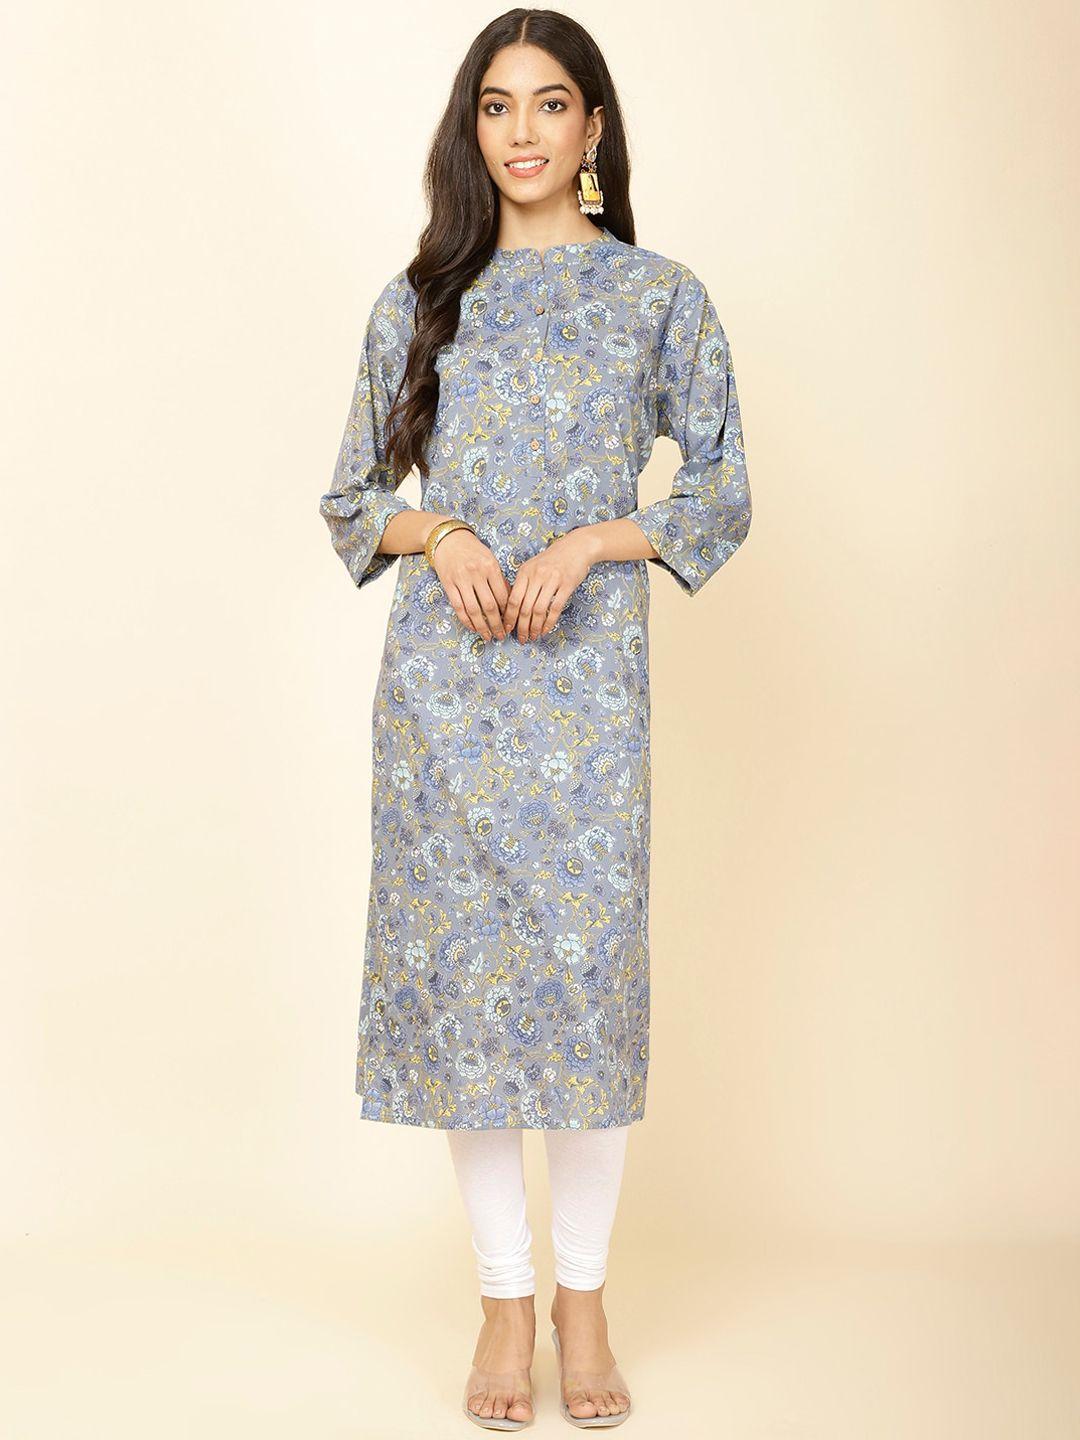 meena bazaar women floral printed flared sleeves kurta